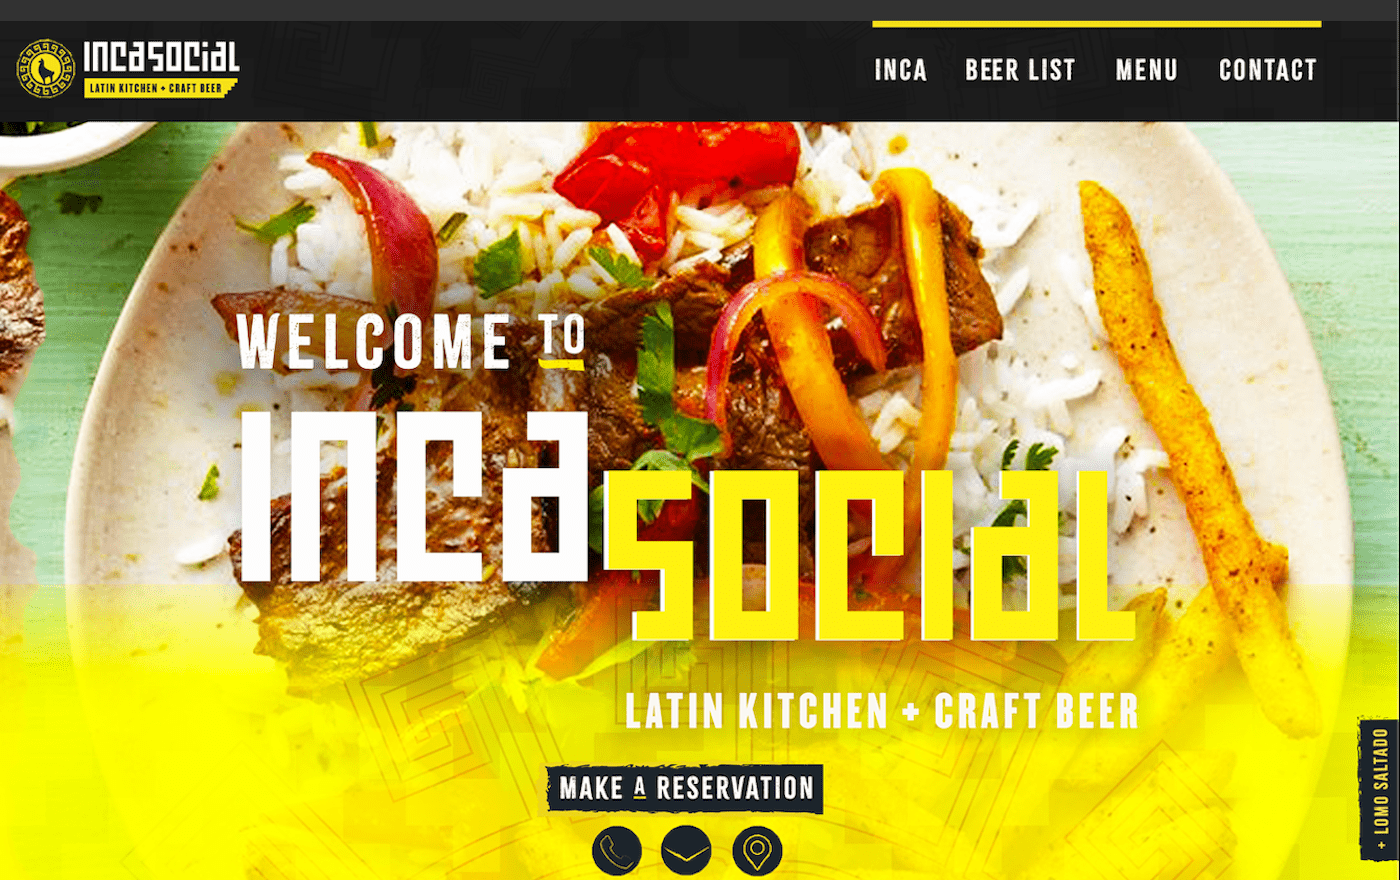 branding  logo menu restaurant social media Website editorial Food  instagram typography  